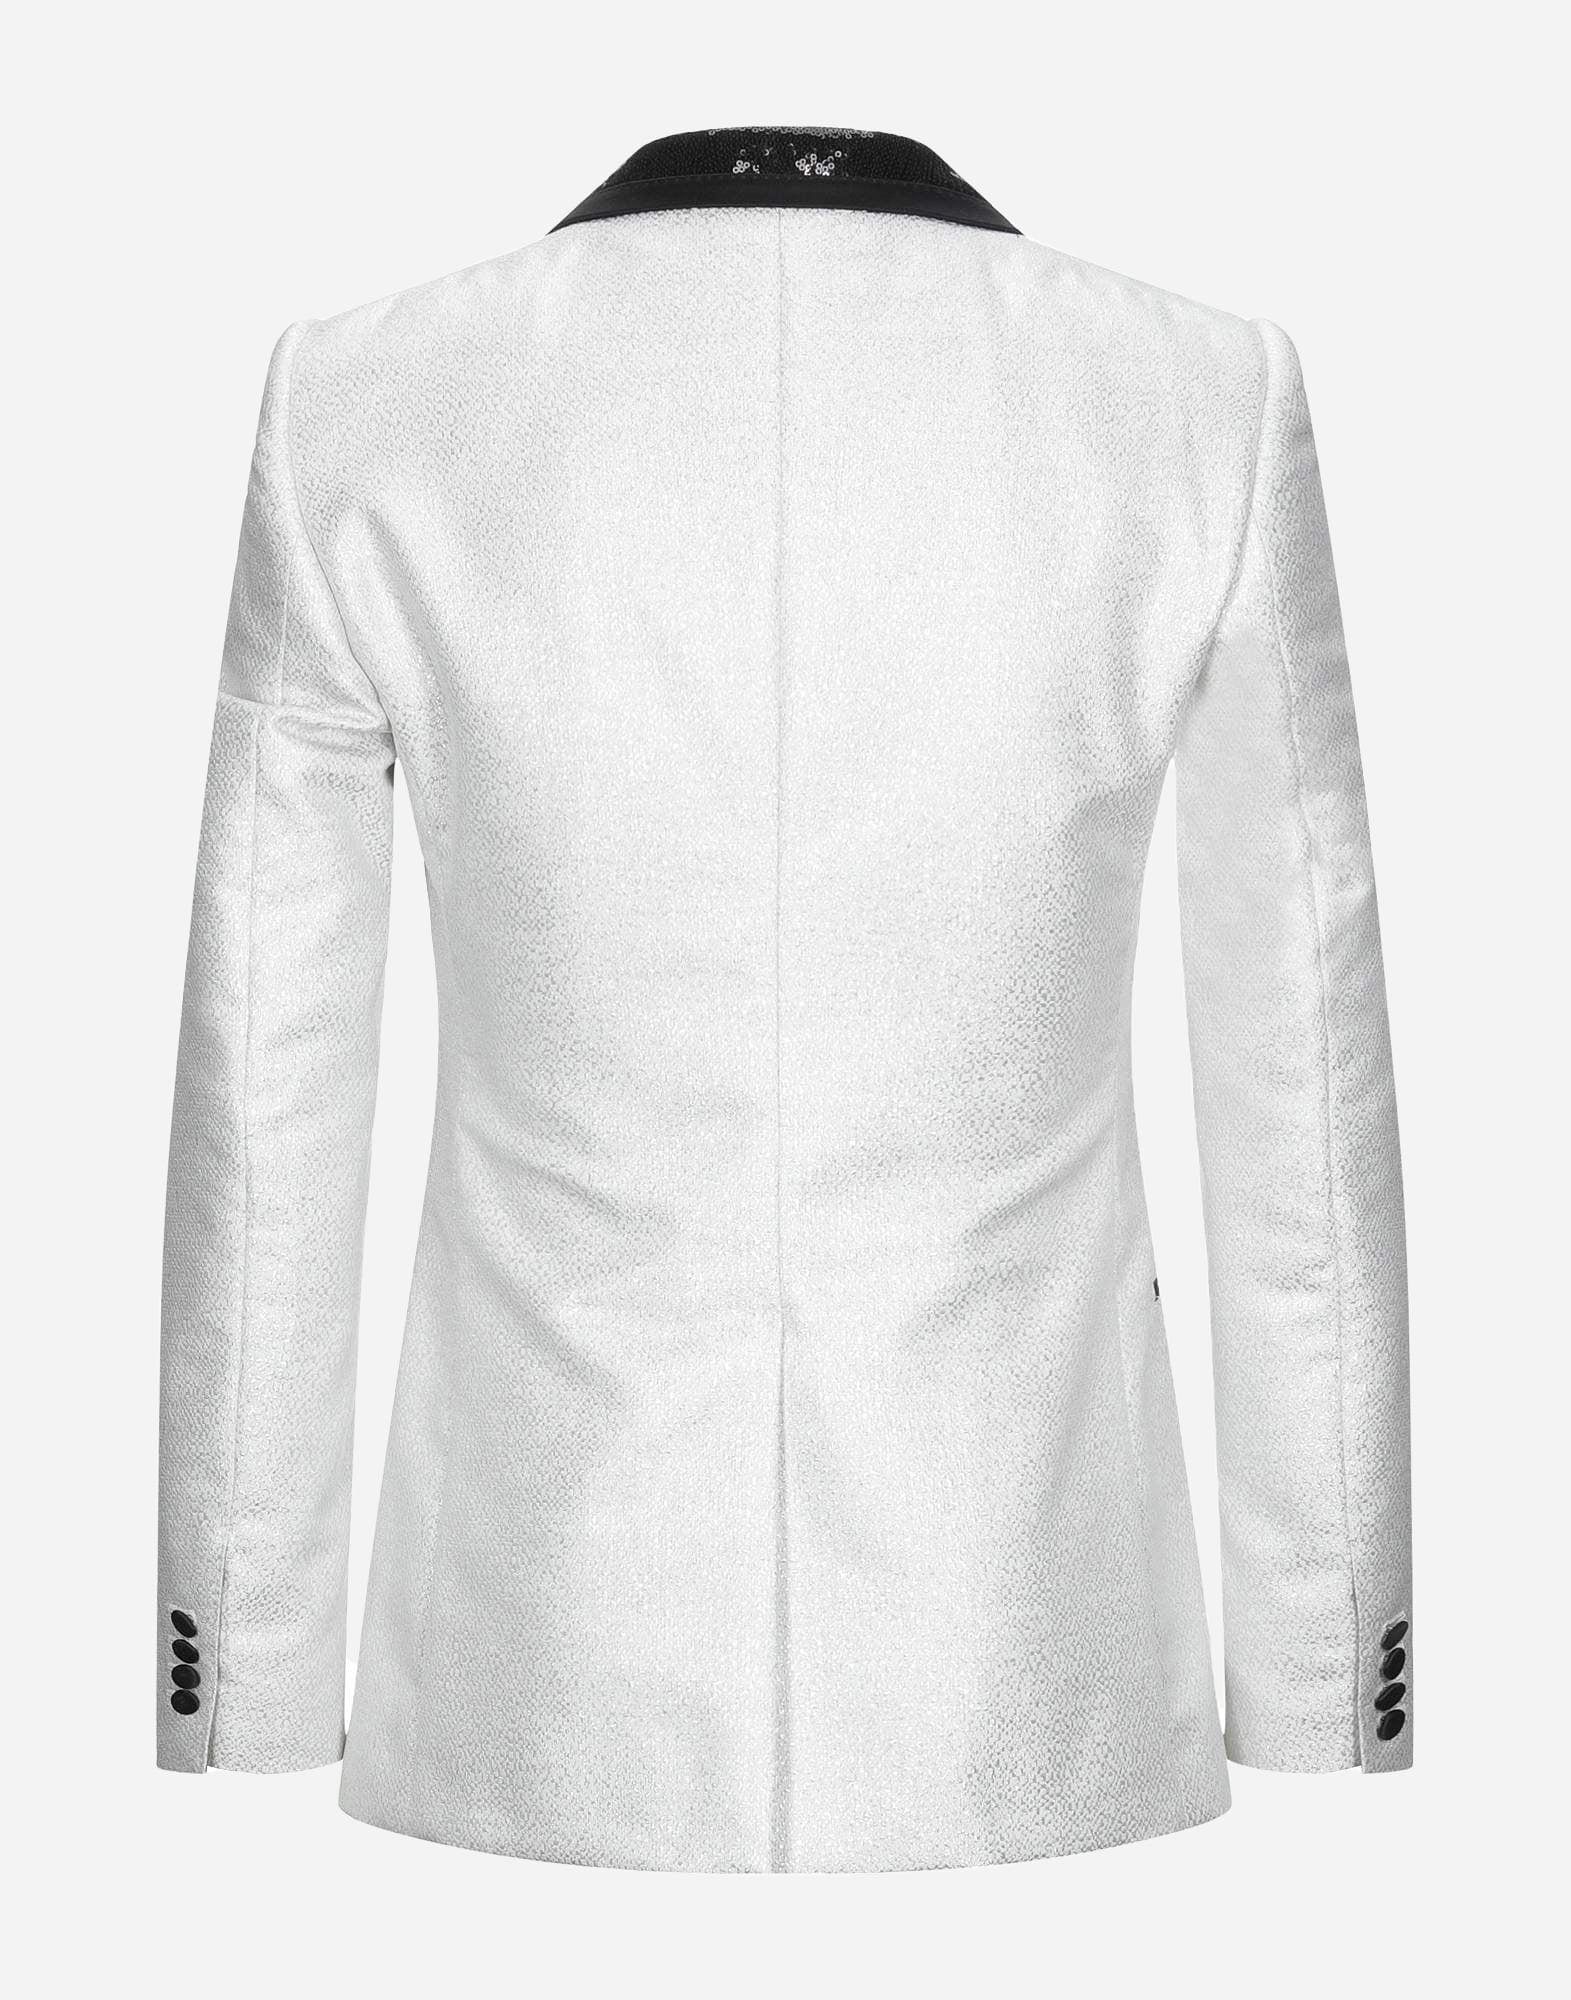 Dolce & Gabbana Sequined Slim Blazer